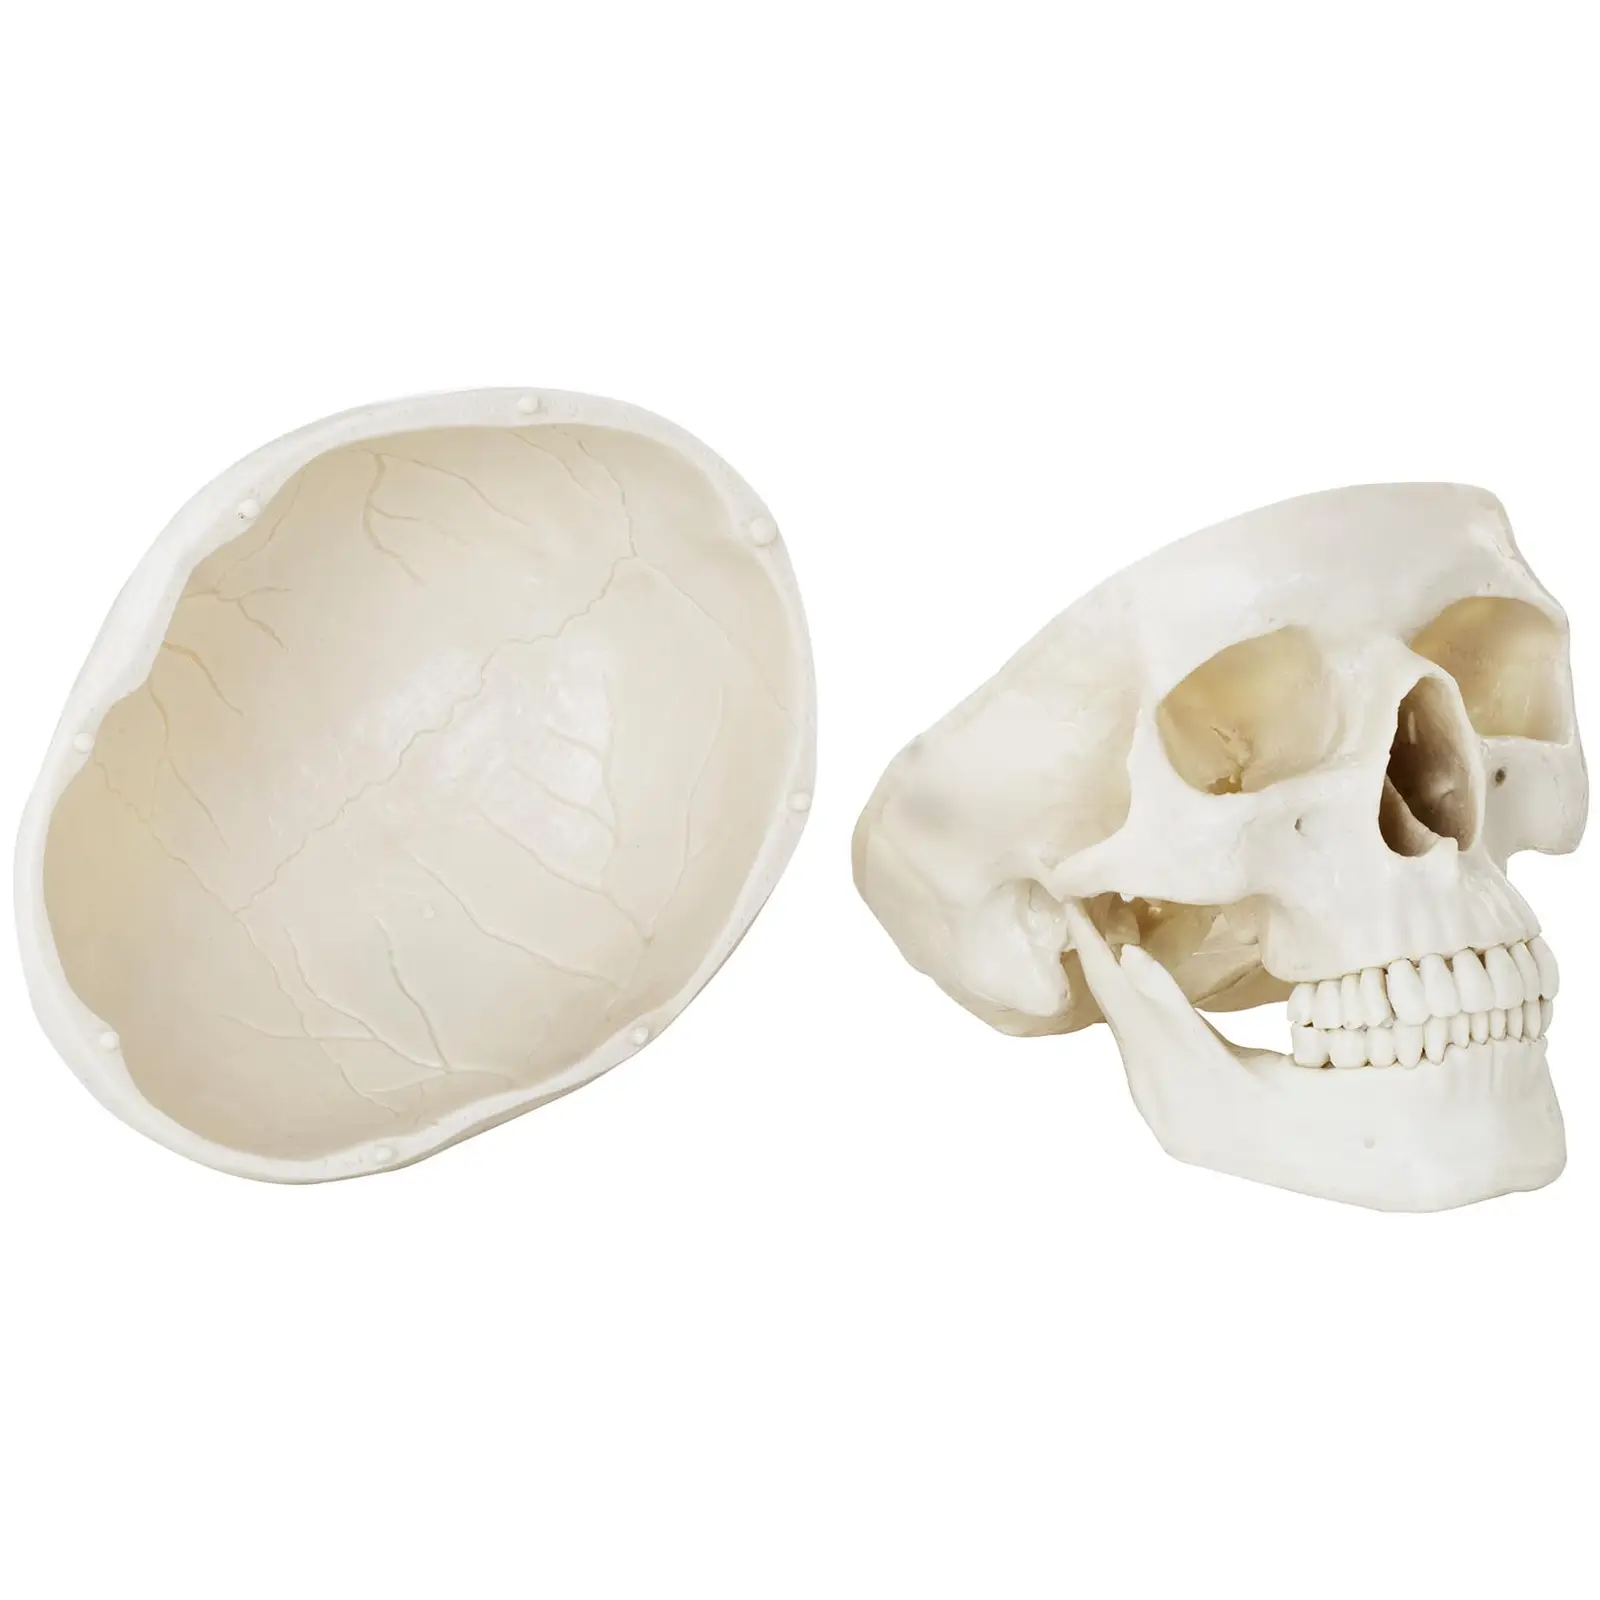 Skull Model - white